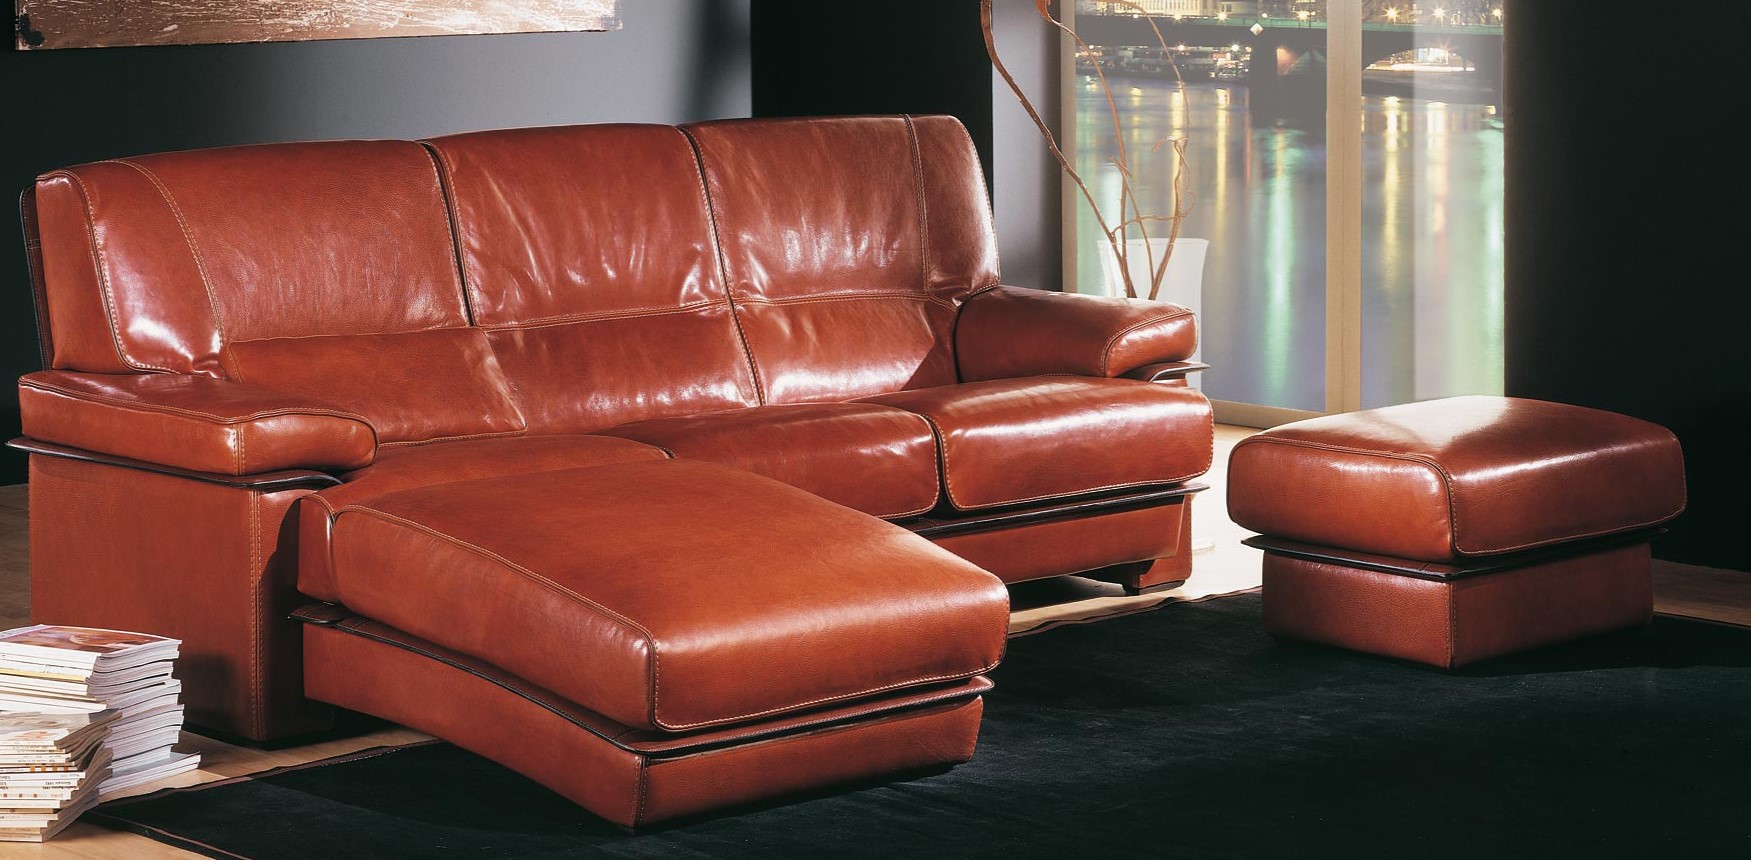 Мебель из искусственной кожи часто используется дизайнерами в современных проектах